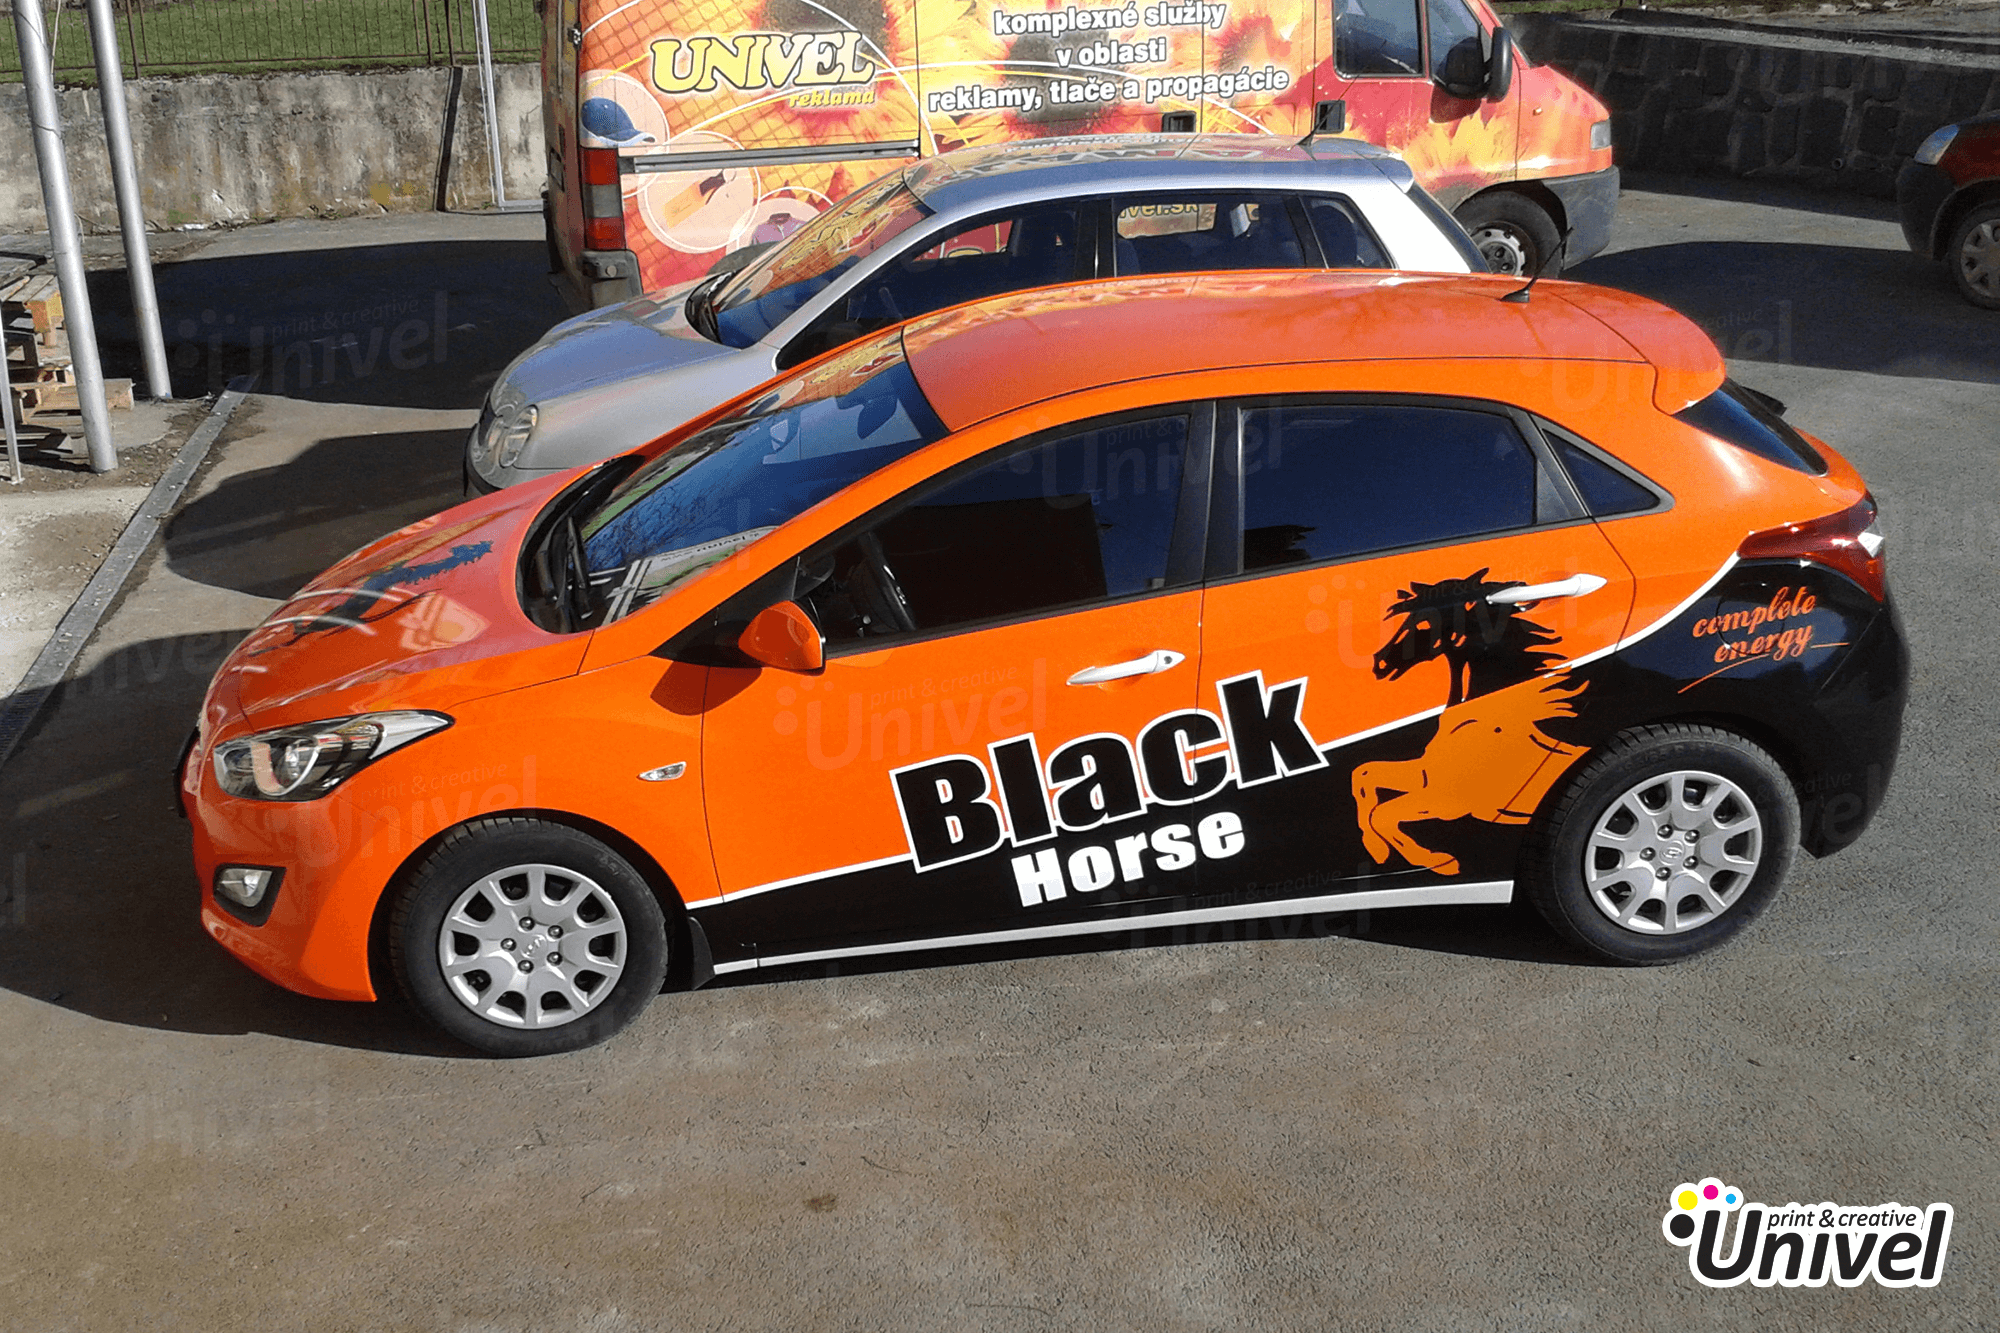 Univel 2014 - Black Horse celopolep auta Hyundai - bok auta